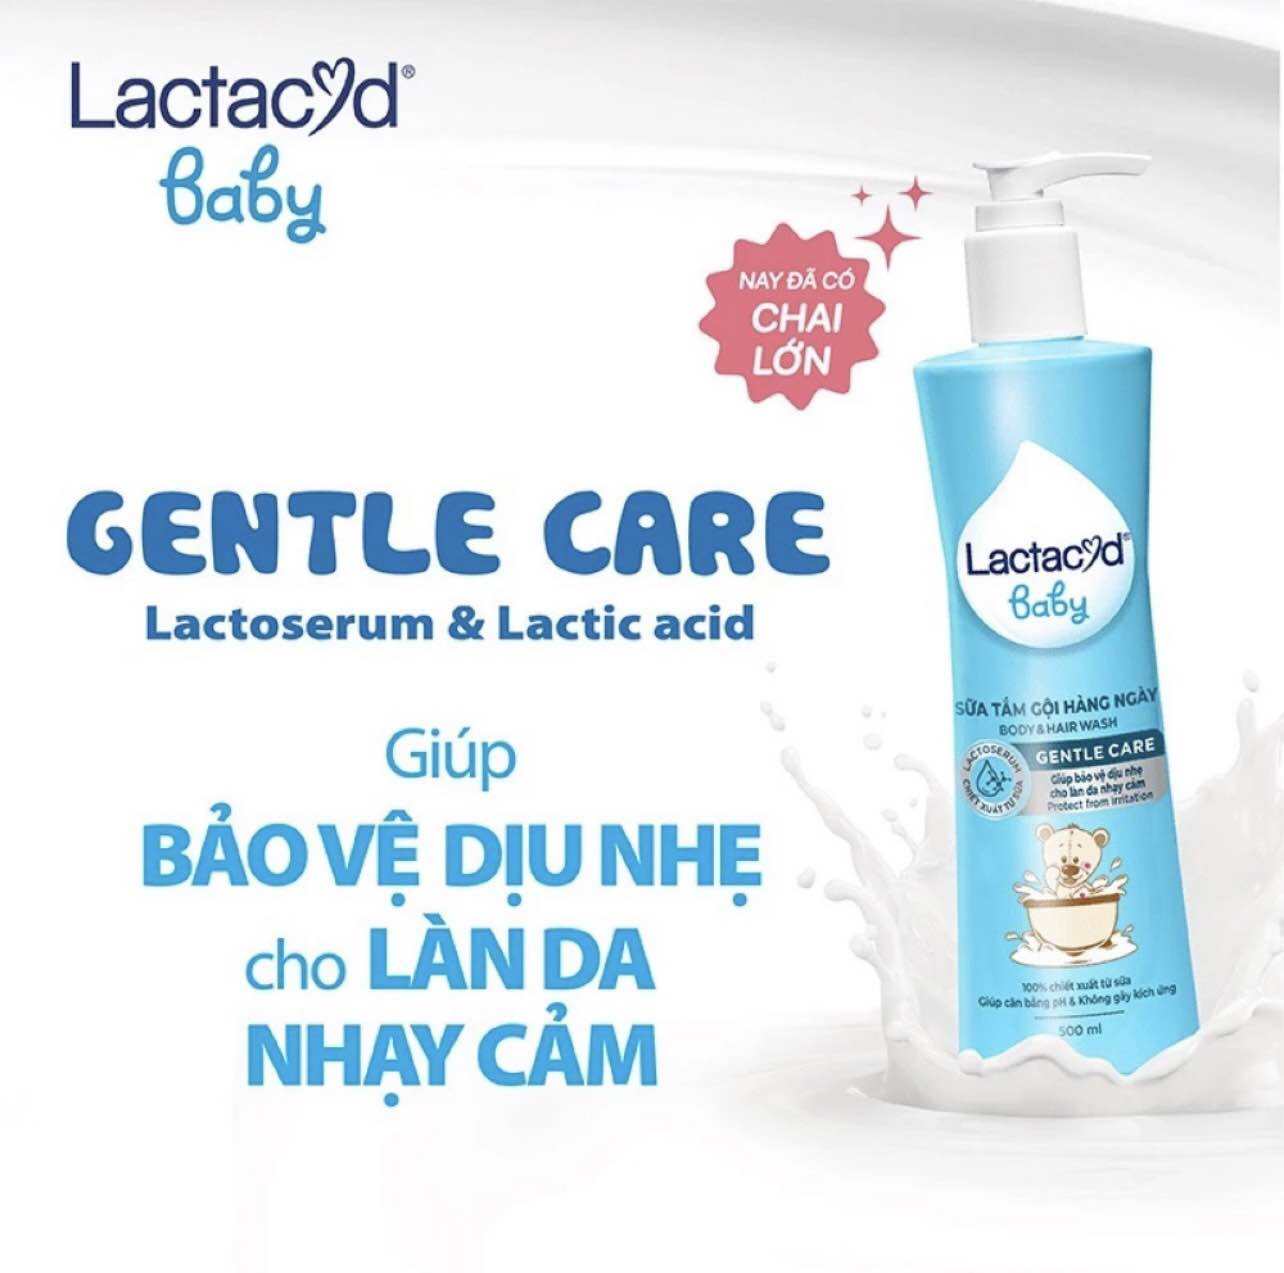 Sữa tắm & gội 2in1 cho bé Lactacyd Gentle Care hương dịu nhẹ 500 ml